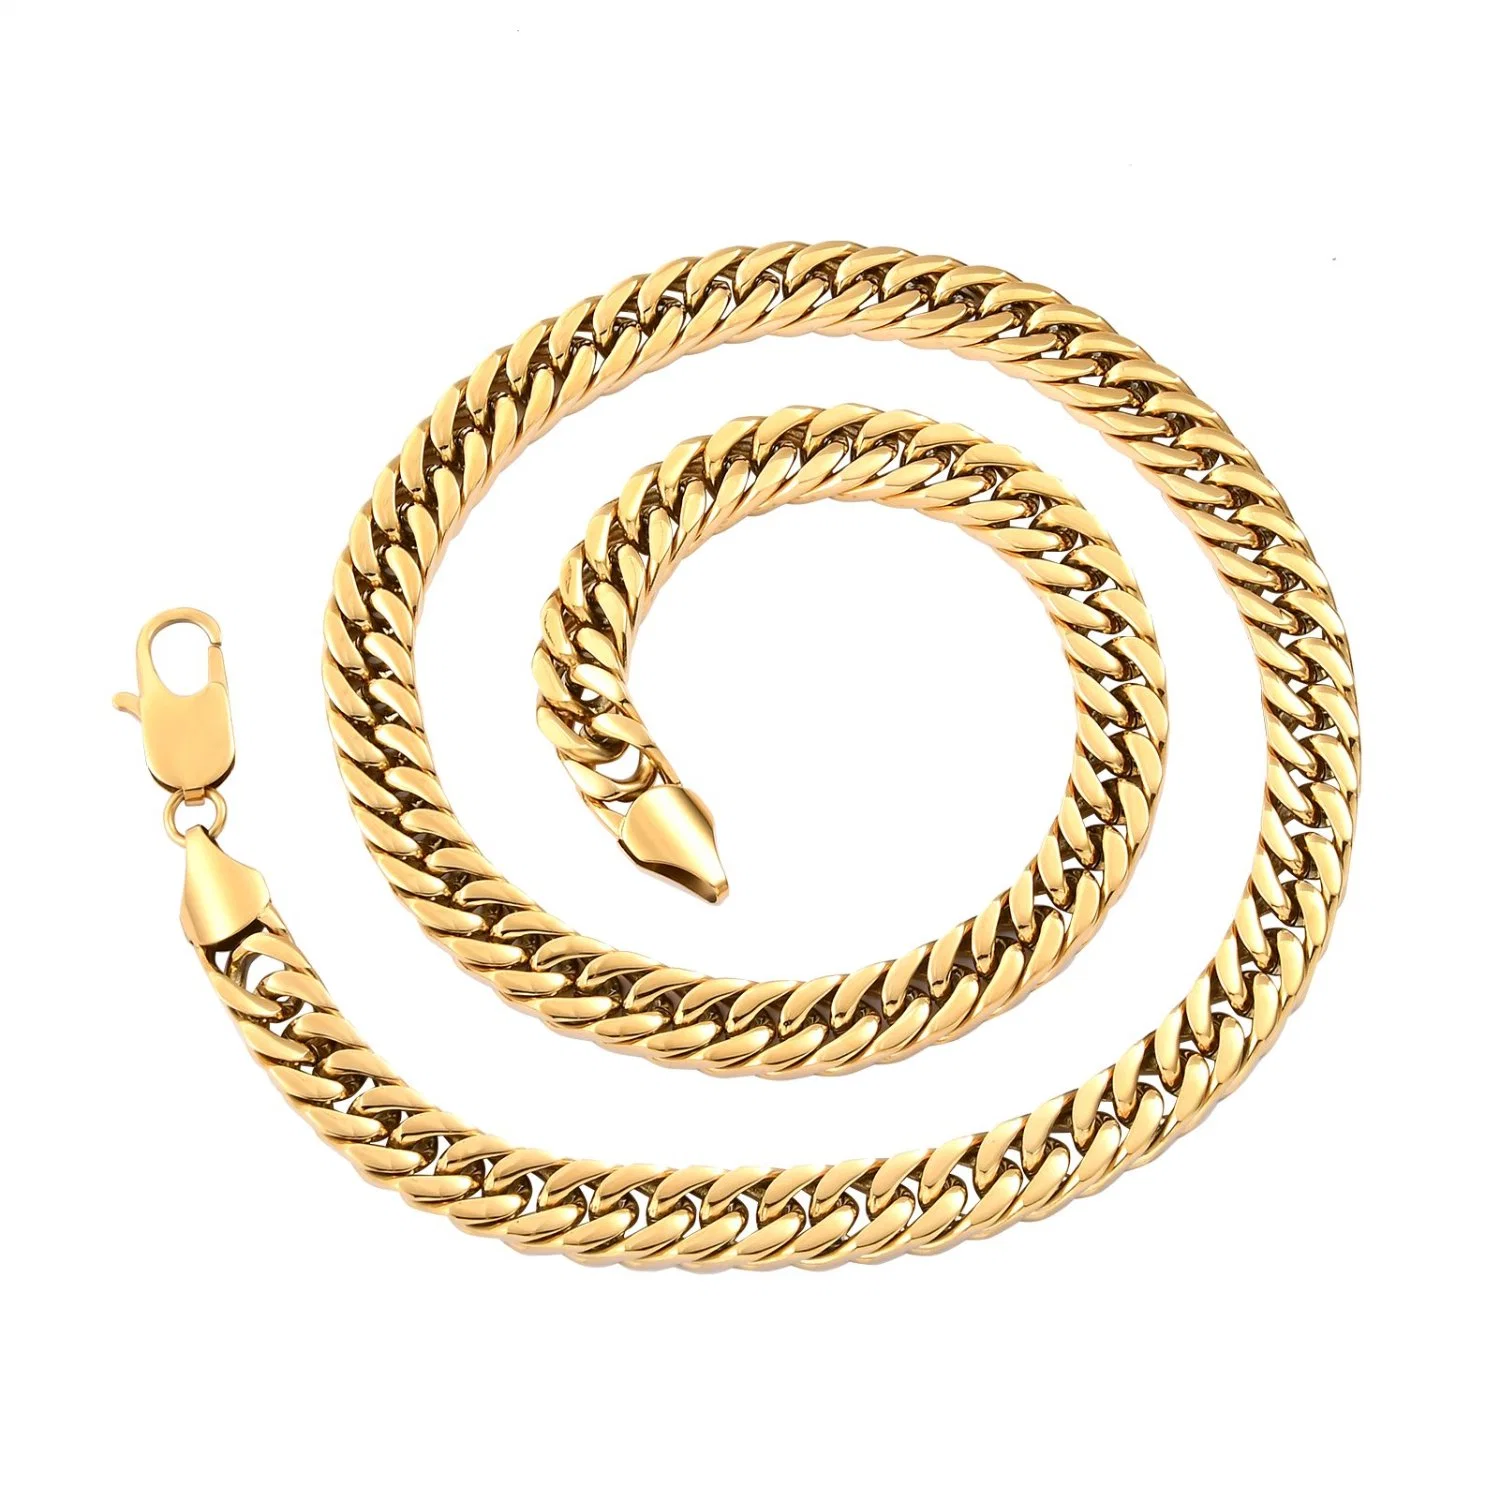 Chunky dick kubanischen Link Kette Halskette für Hip Hop Männer Lady Fashion Schmuck 14K vergoldet